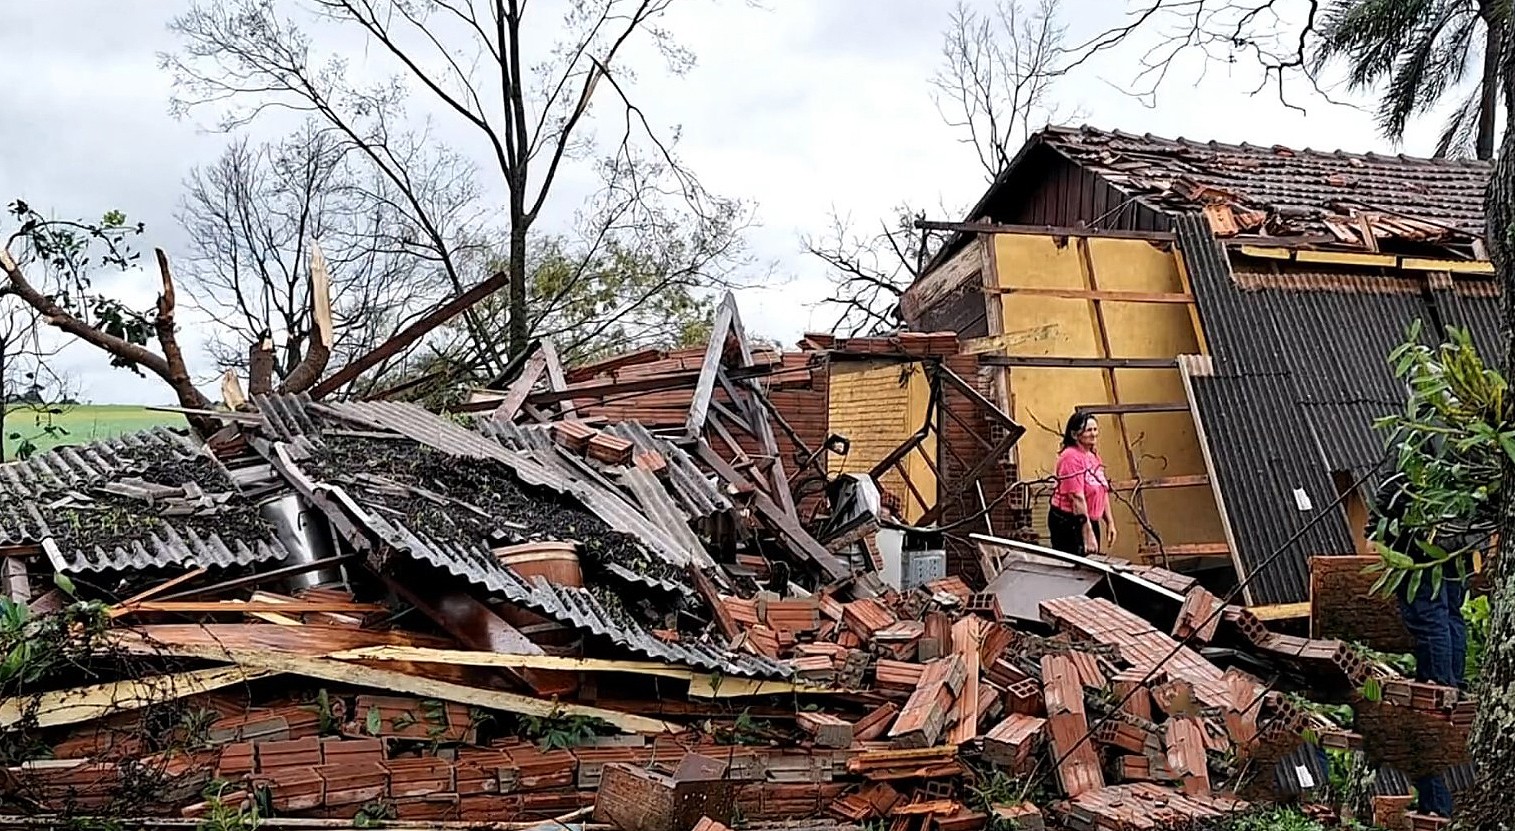 Ciclone arranca árvores, interdita casas e causa estragos em Doutor Maurício no Rio Grande do Sul.  — Foto: Reprodução/TV Globo